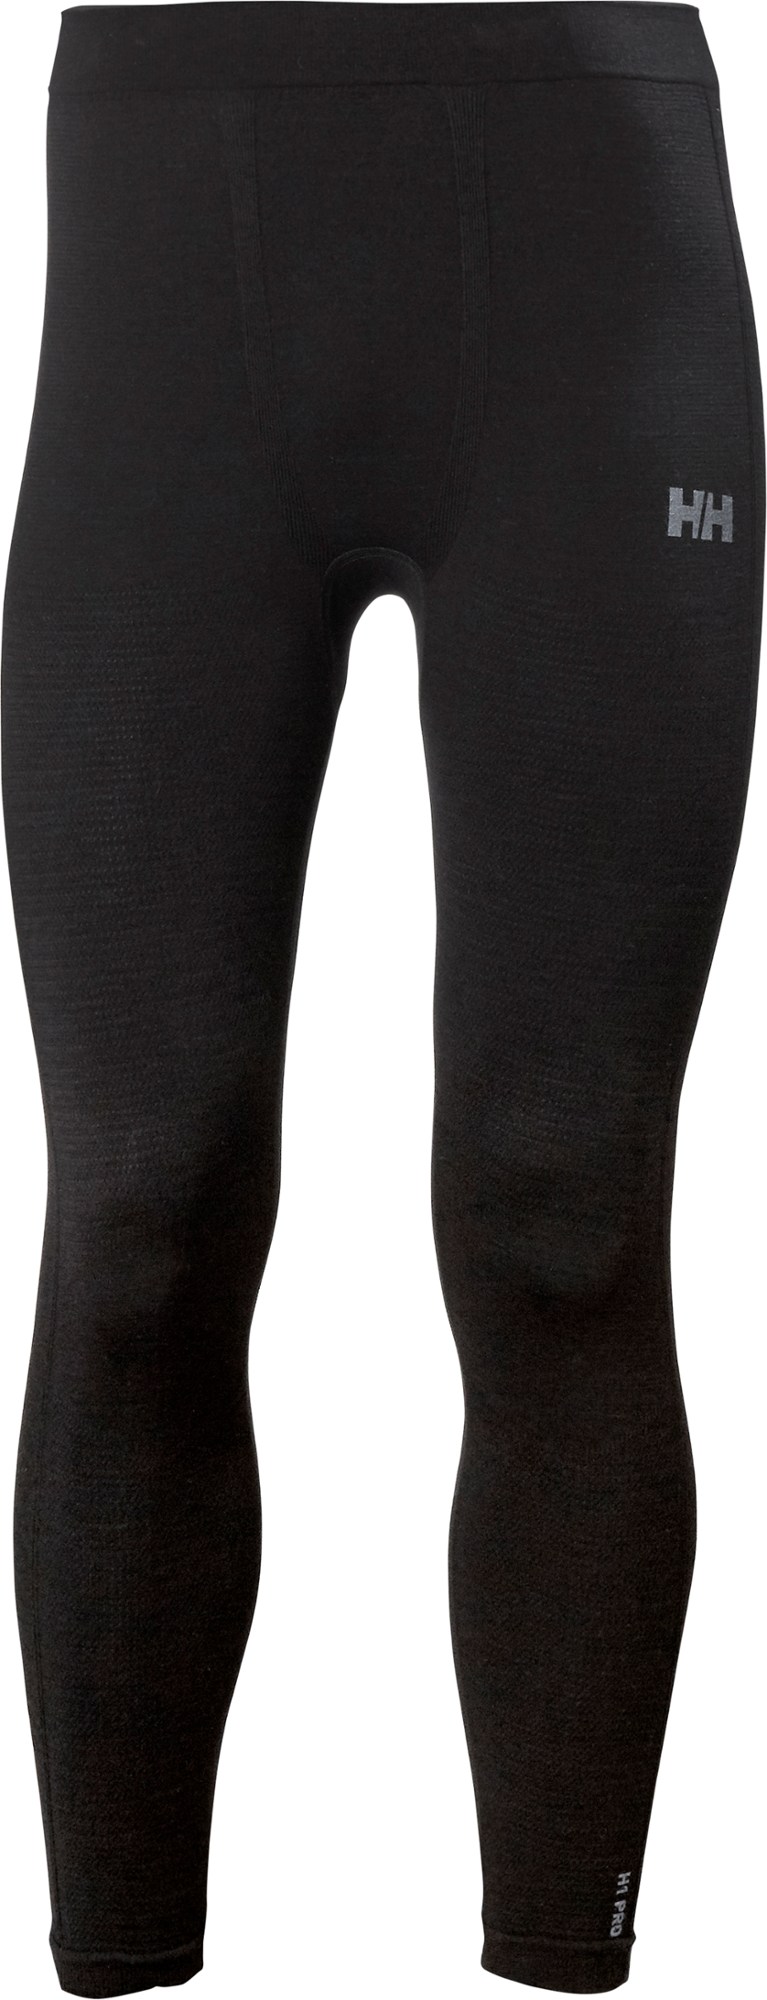 Бесшовные брюки с базовым слоем H1 Pro Lifa — мужские Helly Hansen, черный